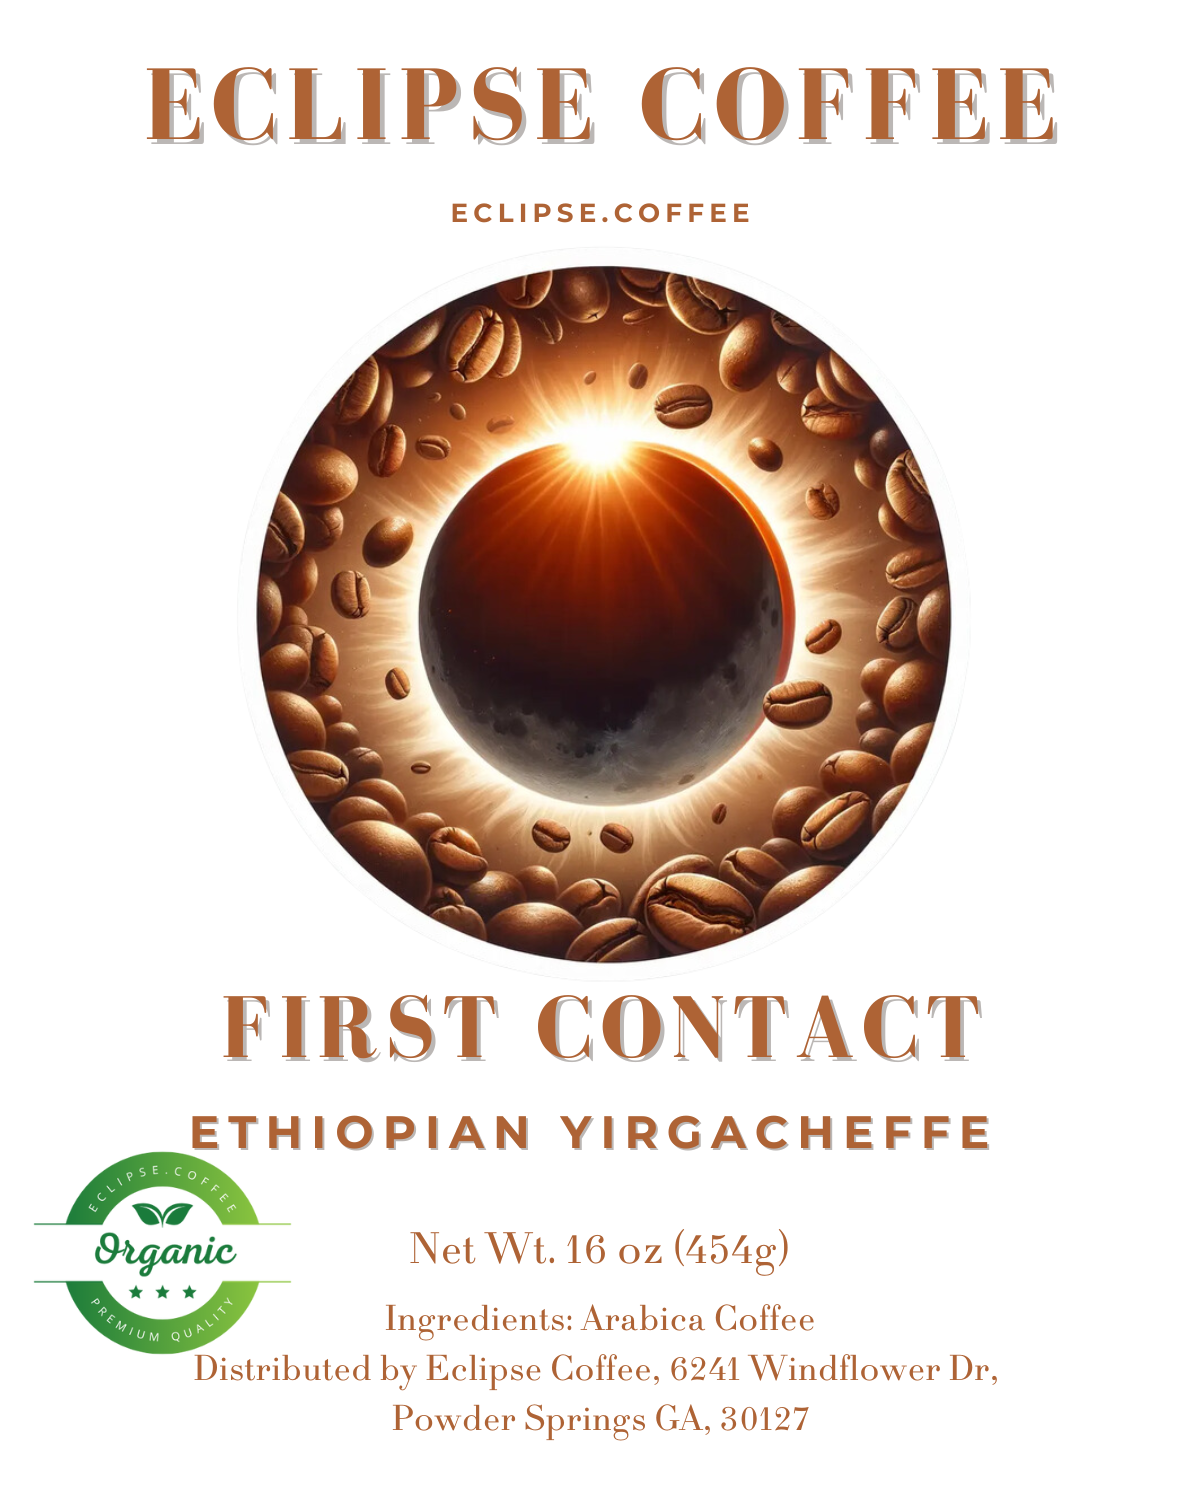 First Contact: Ethiopian Yirgacheffe